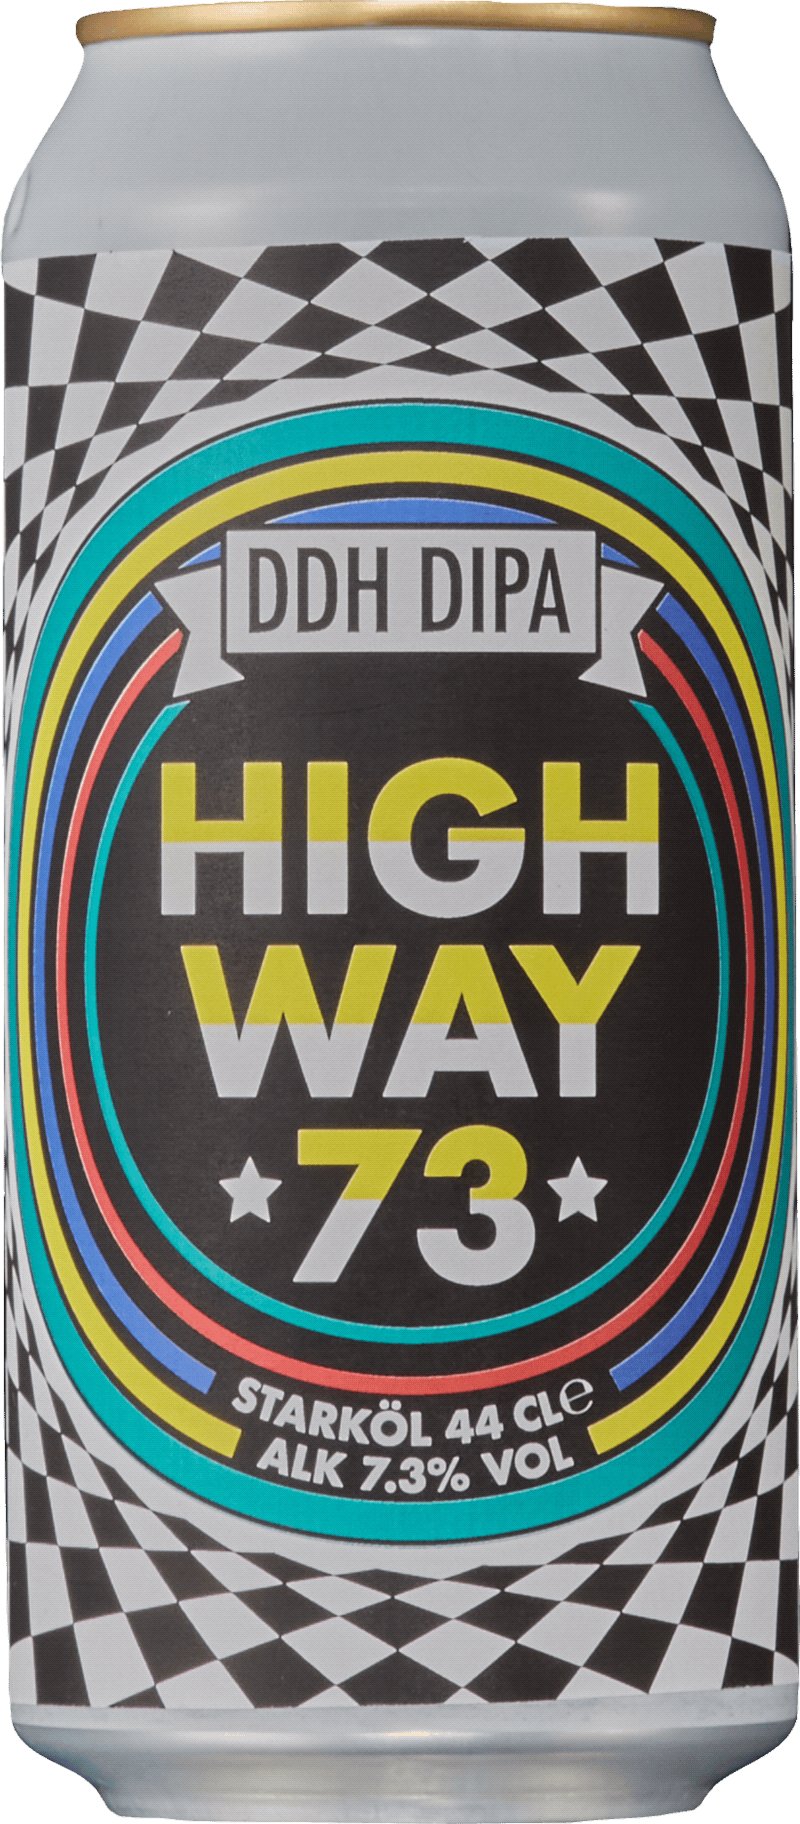 Södra Highway 73  Revisited DDH DIPA